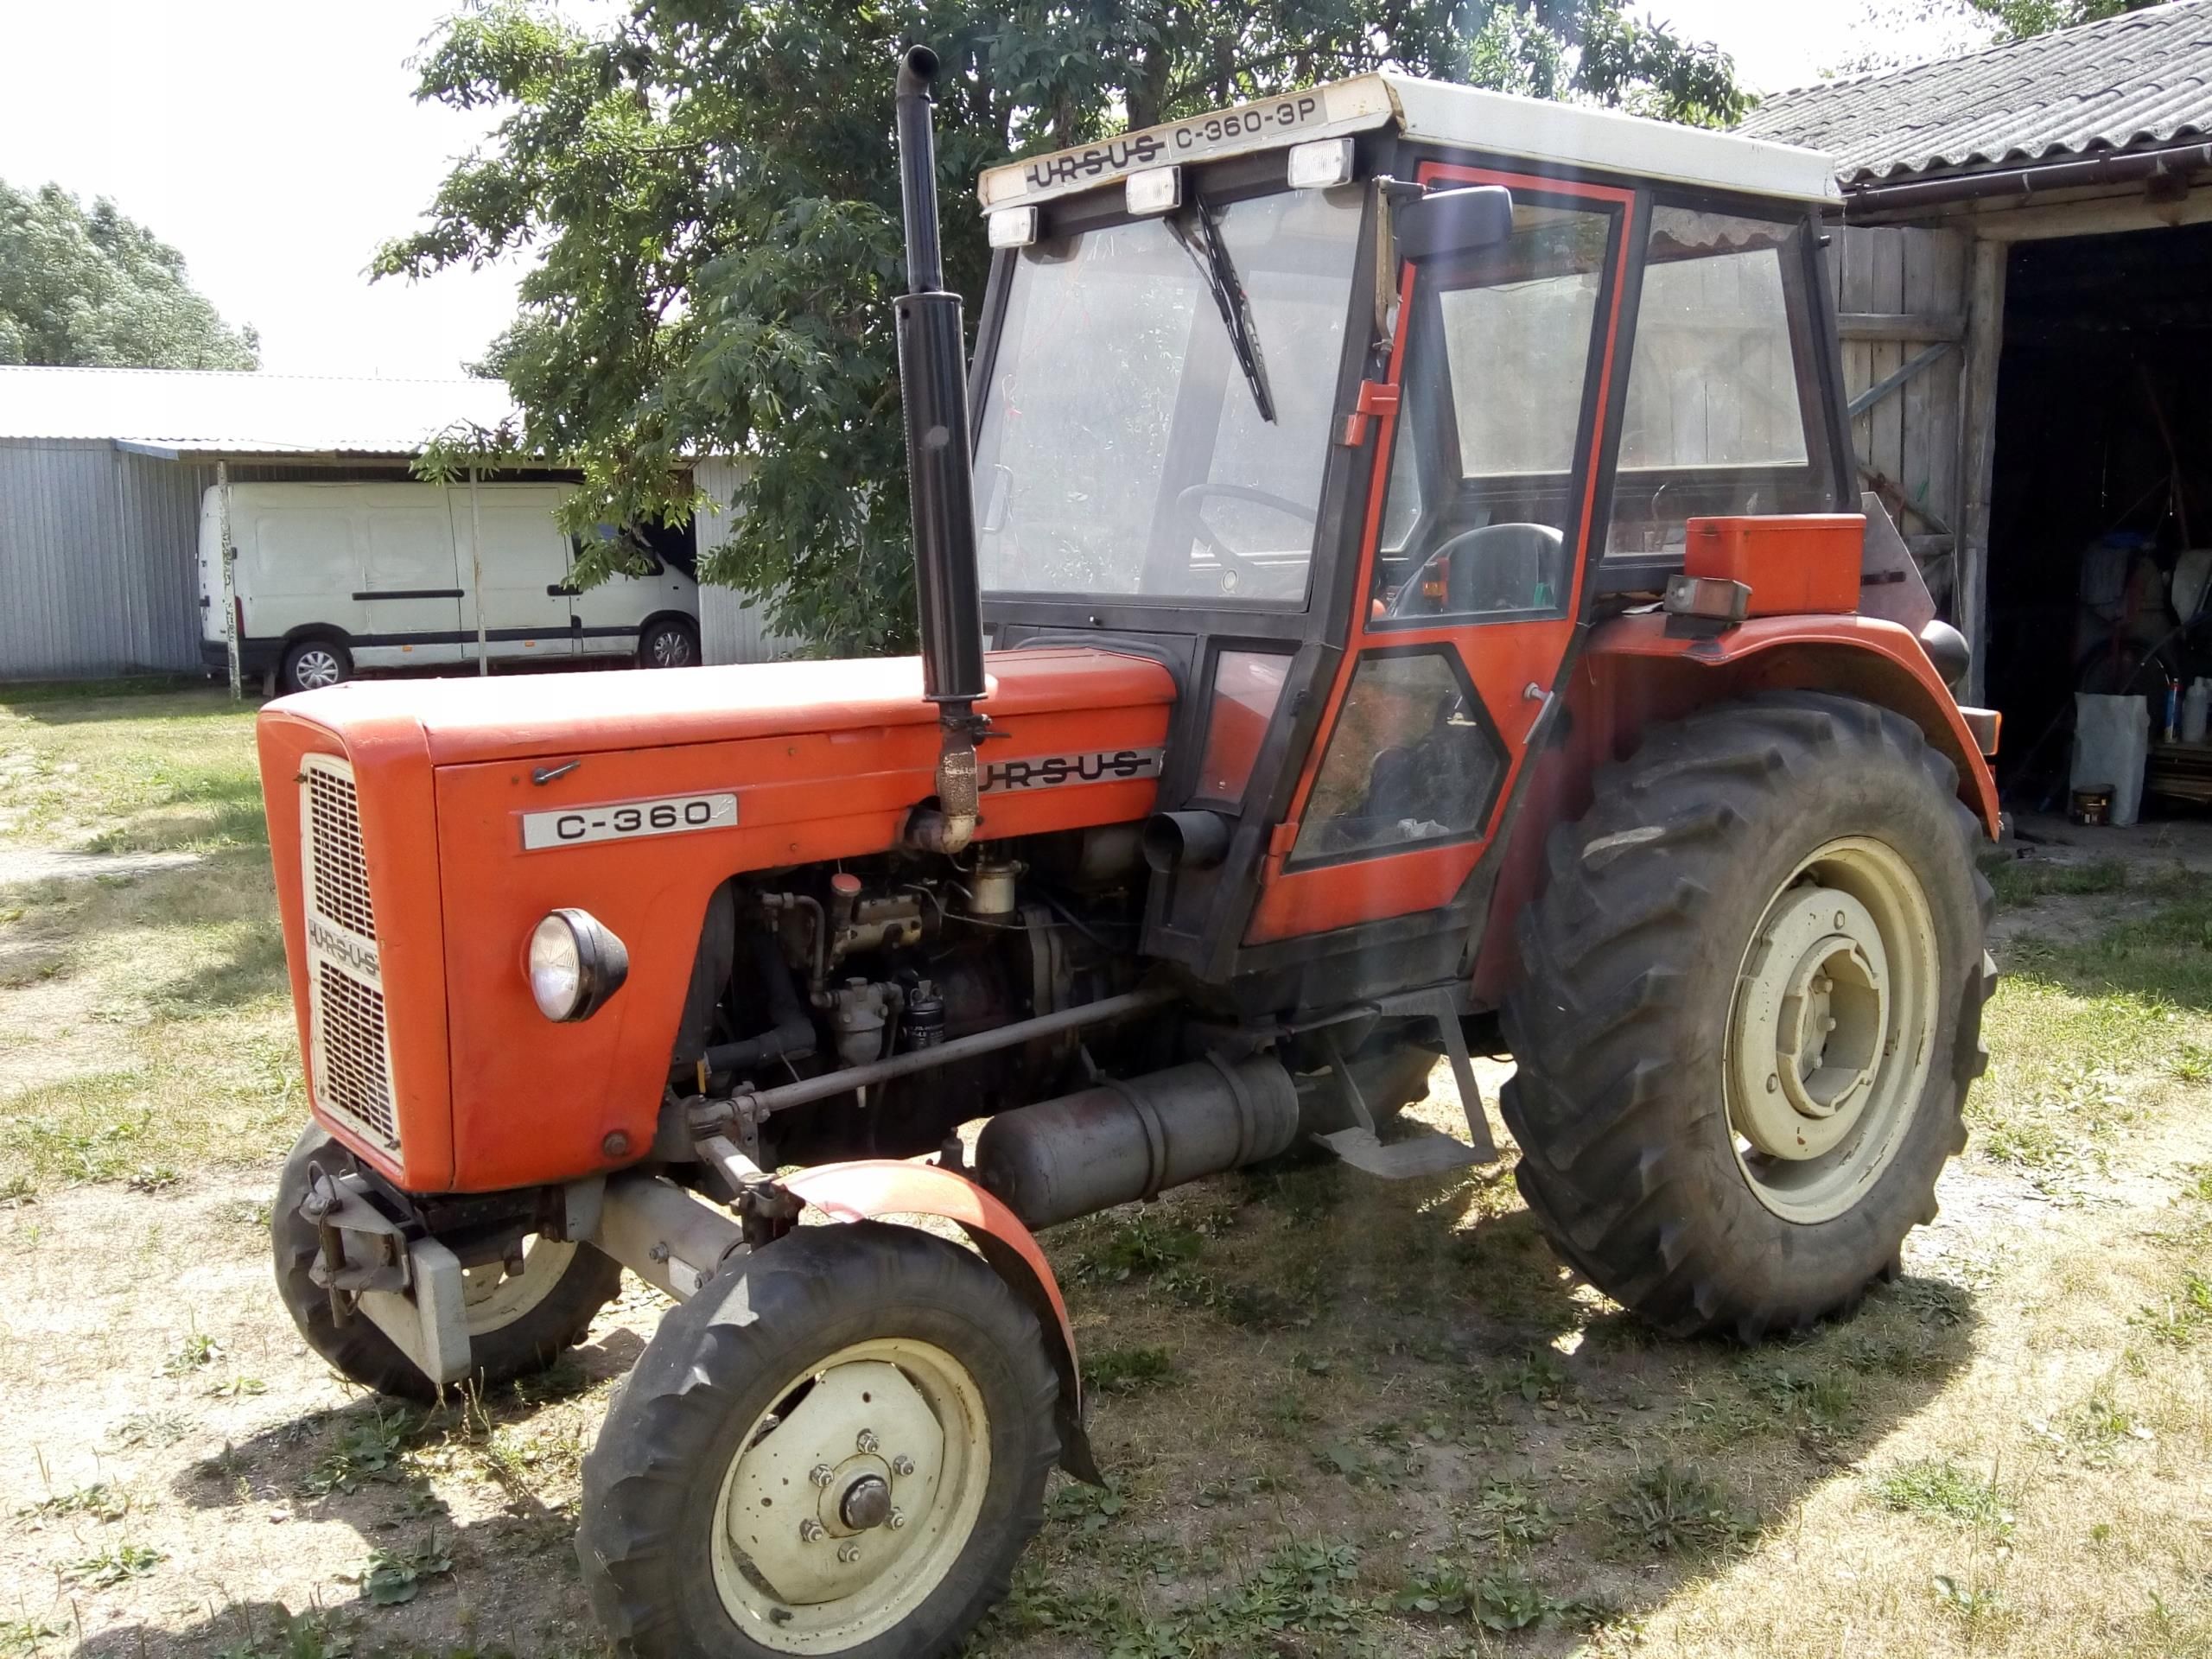 Traktor Ursus C360 3p Perkins Malo Uzywany Opinie I Ceny Na Ceneo Pl